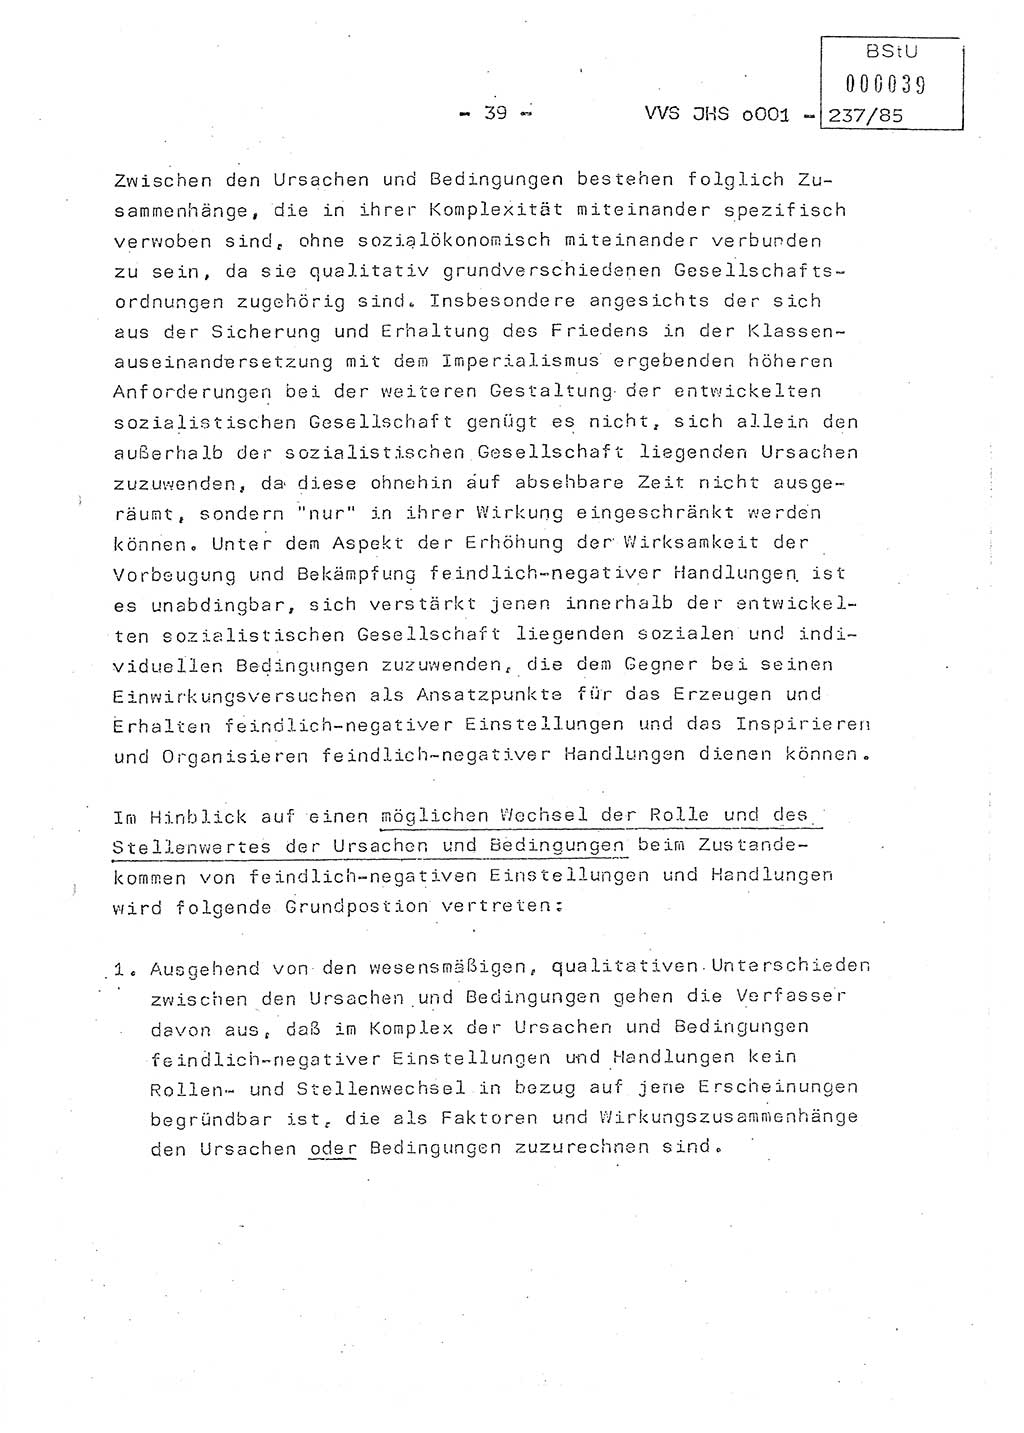 Dissertation Oberstleutnant Peter Jakulski (JHS), Oberstleutnat Christian Rudolph (HA Ⅸ), Major Horst Böttger (ZMD), Major Wolfgang Grüneberg (JHS), Major Albert Meutsch (JHS), Ministerium für Staatssicherheit (MfS) [Deutsche Demokratische Republik (DDR)], Juristische Hochschule (JHS), Vertrauliche Verschlußsache (VVS) o001-237/85, Potsdam 1985, Seite 39 (Diss. MfS DDR JHS VVS o001-237/85 1985, S. 39)